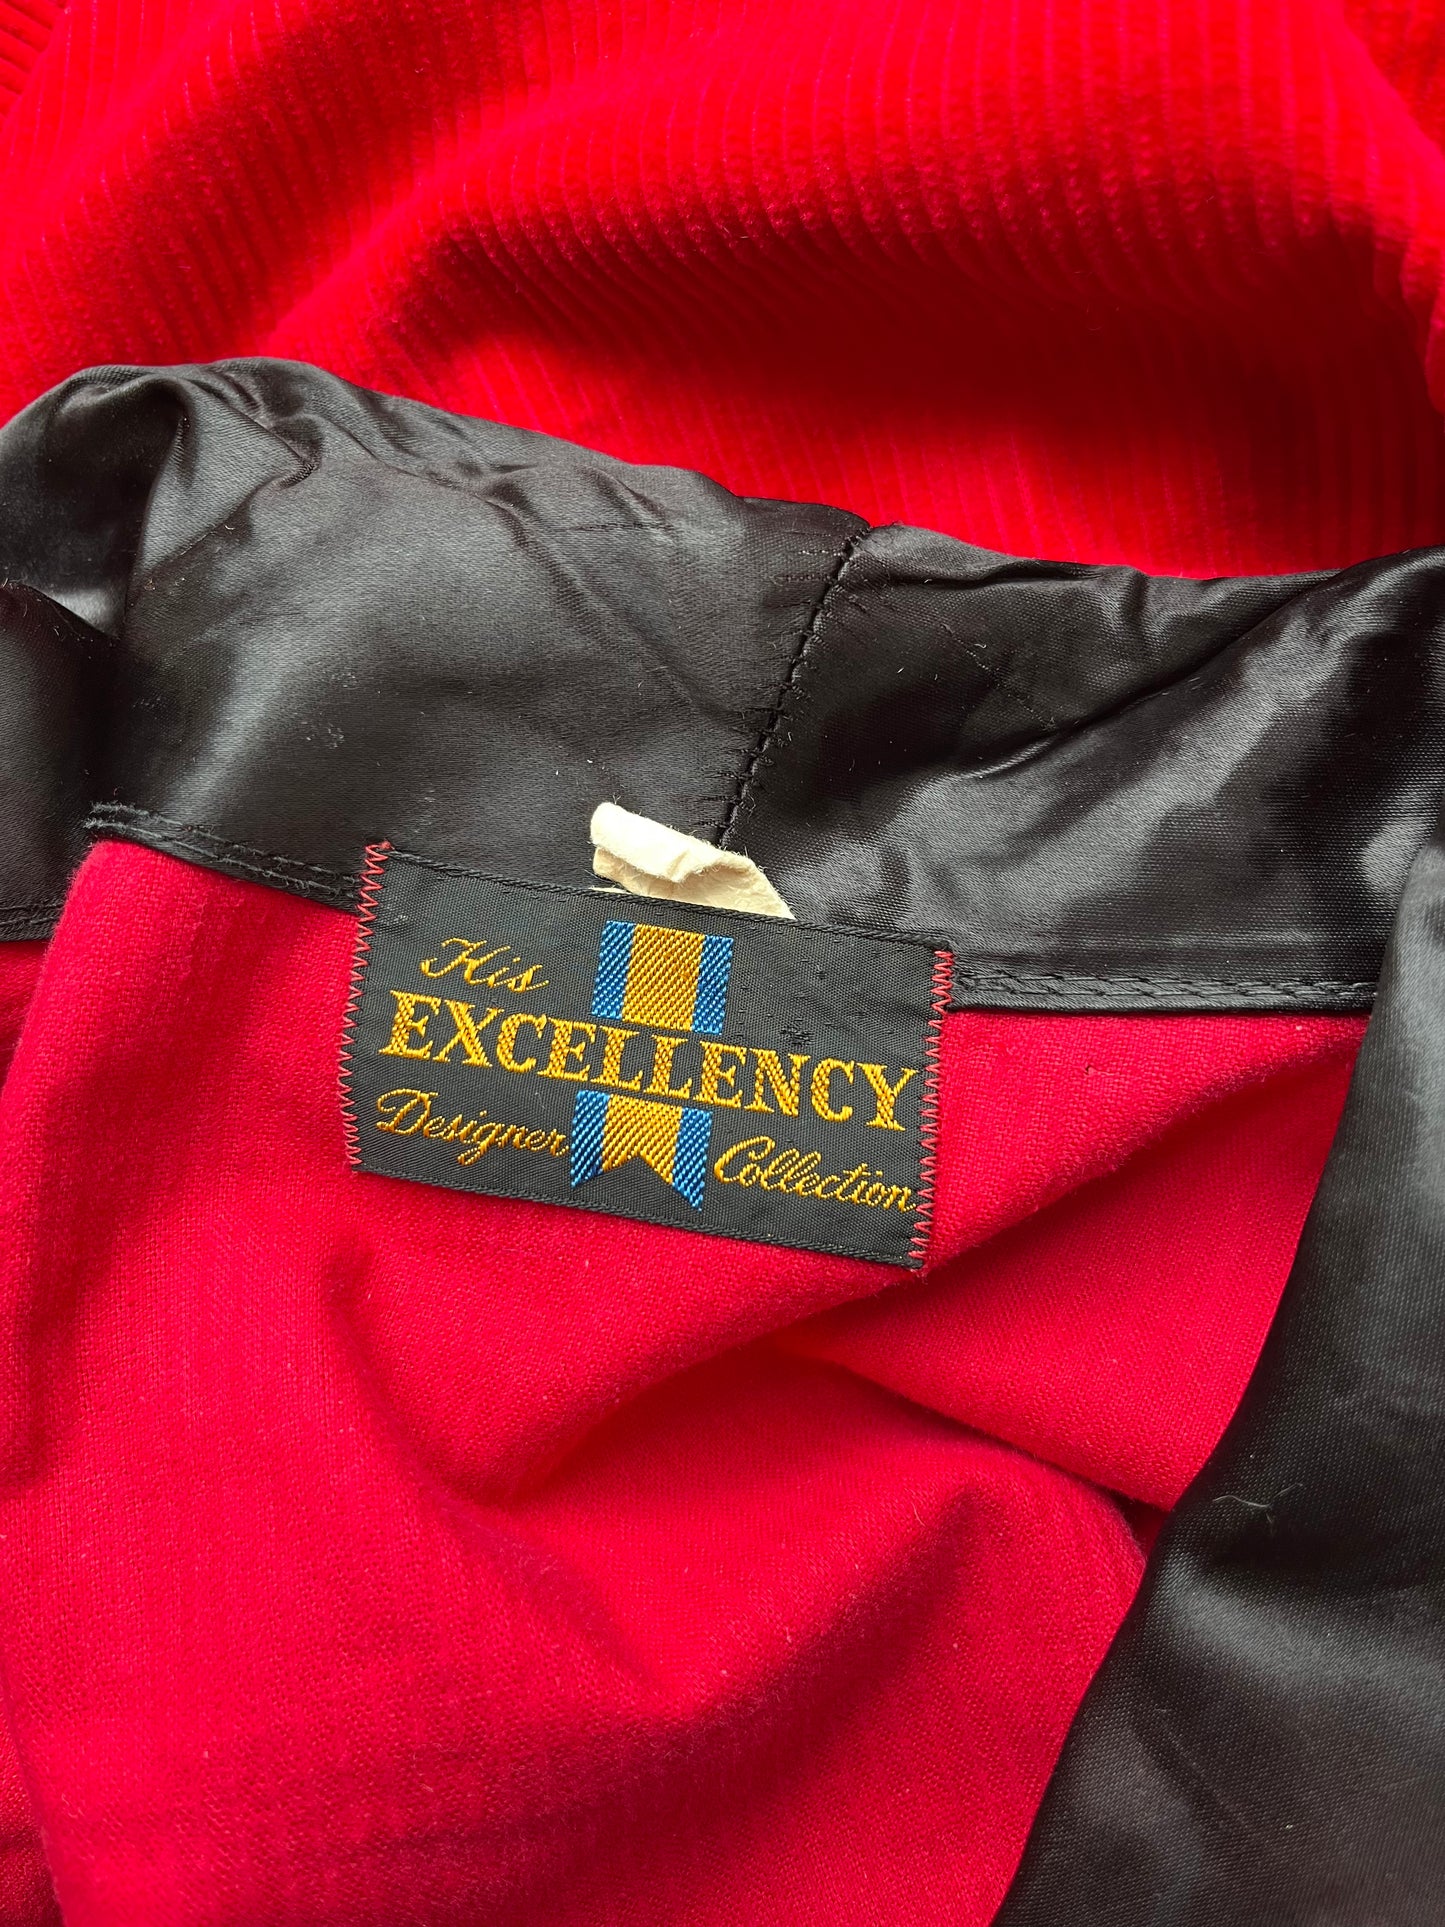 1950s Red Corduroy Smoking Jacket [M-XXL]